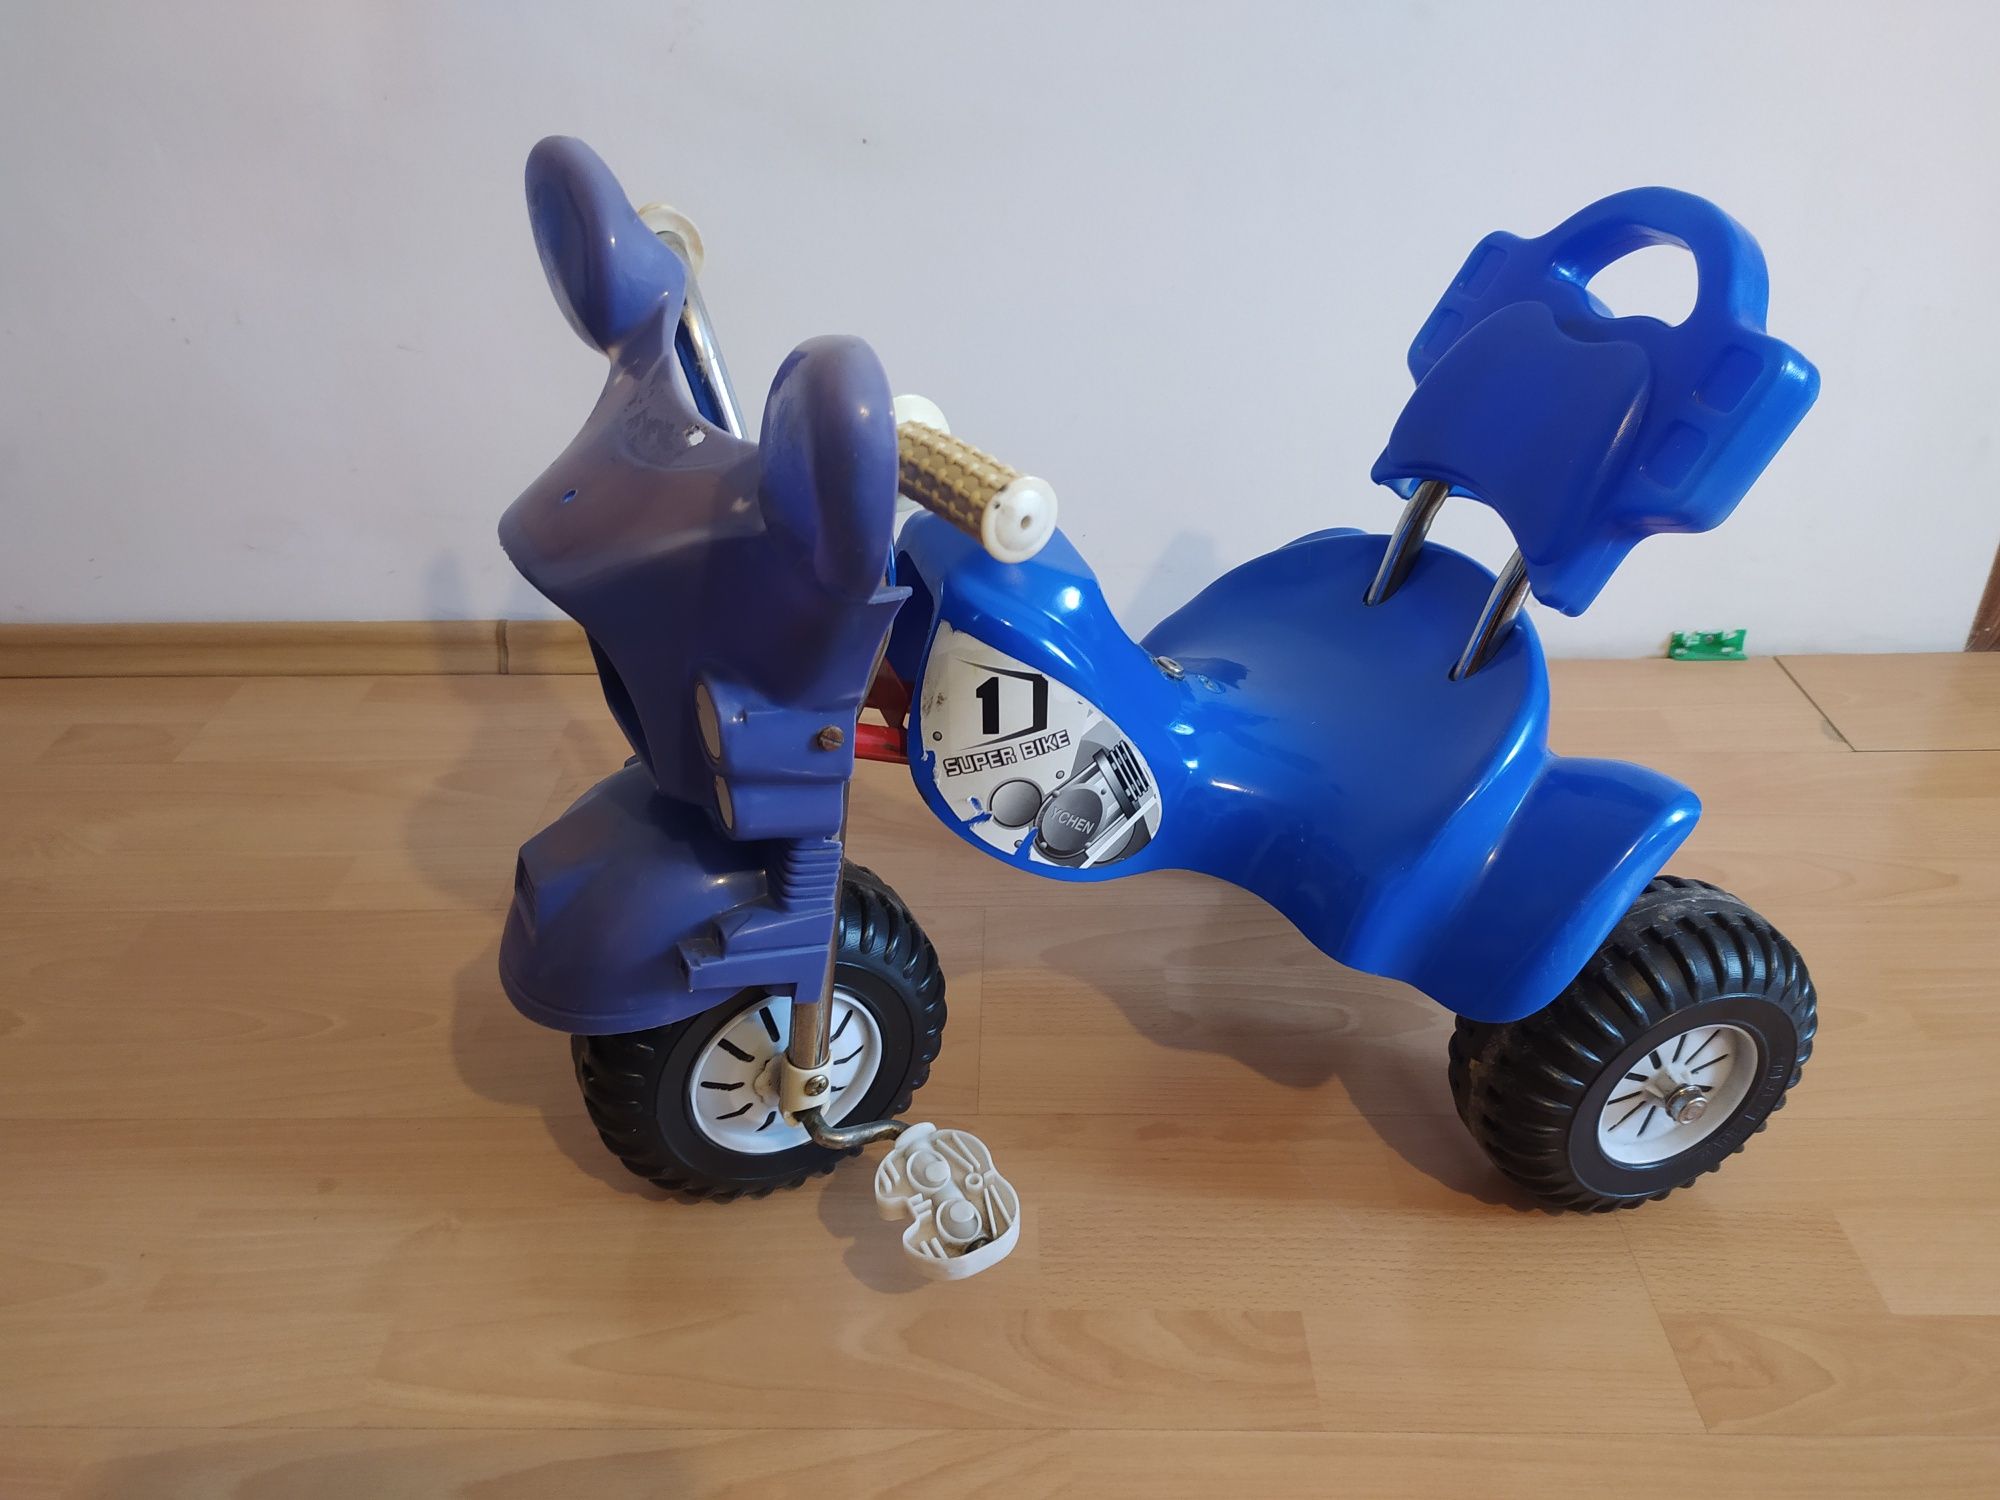 Rowerek dla dzieci niebieski trzykołowy dla chłopca 2-4 lat